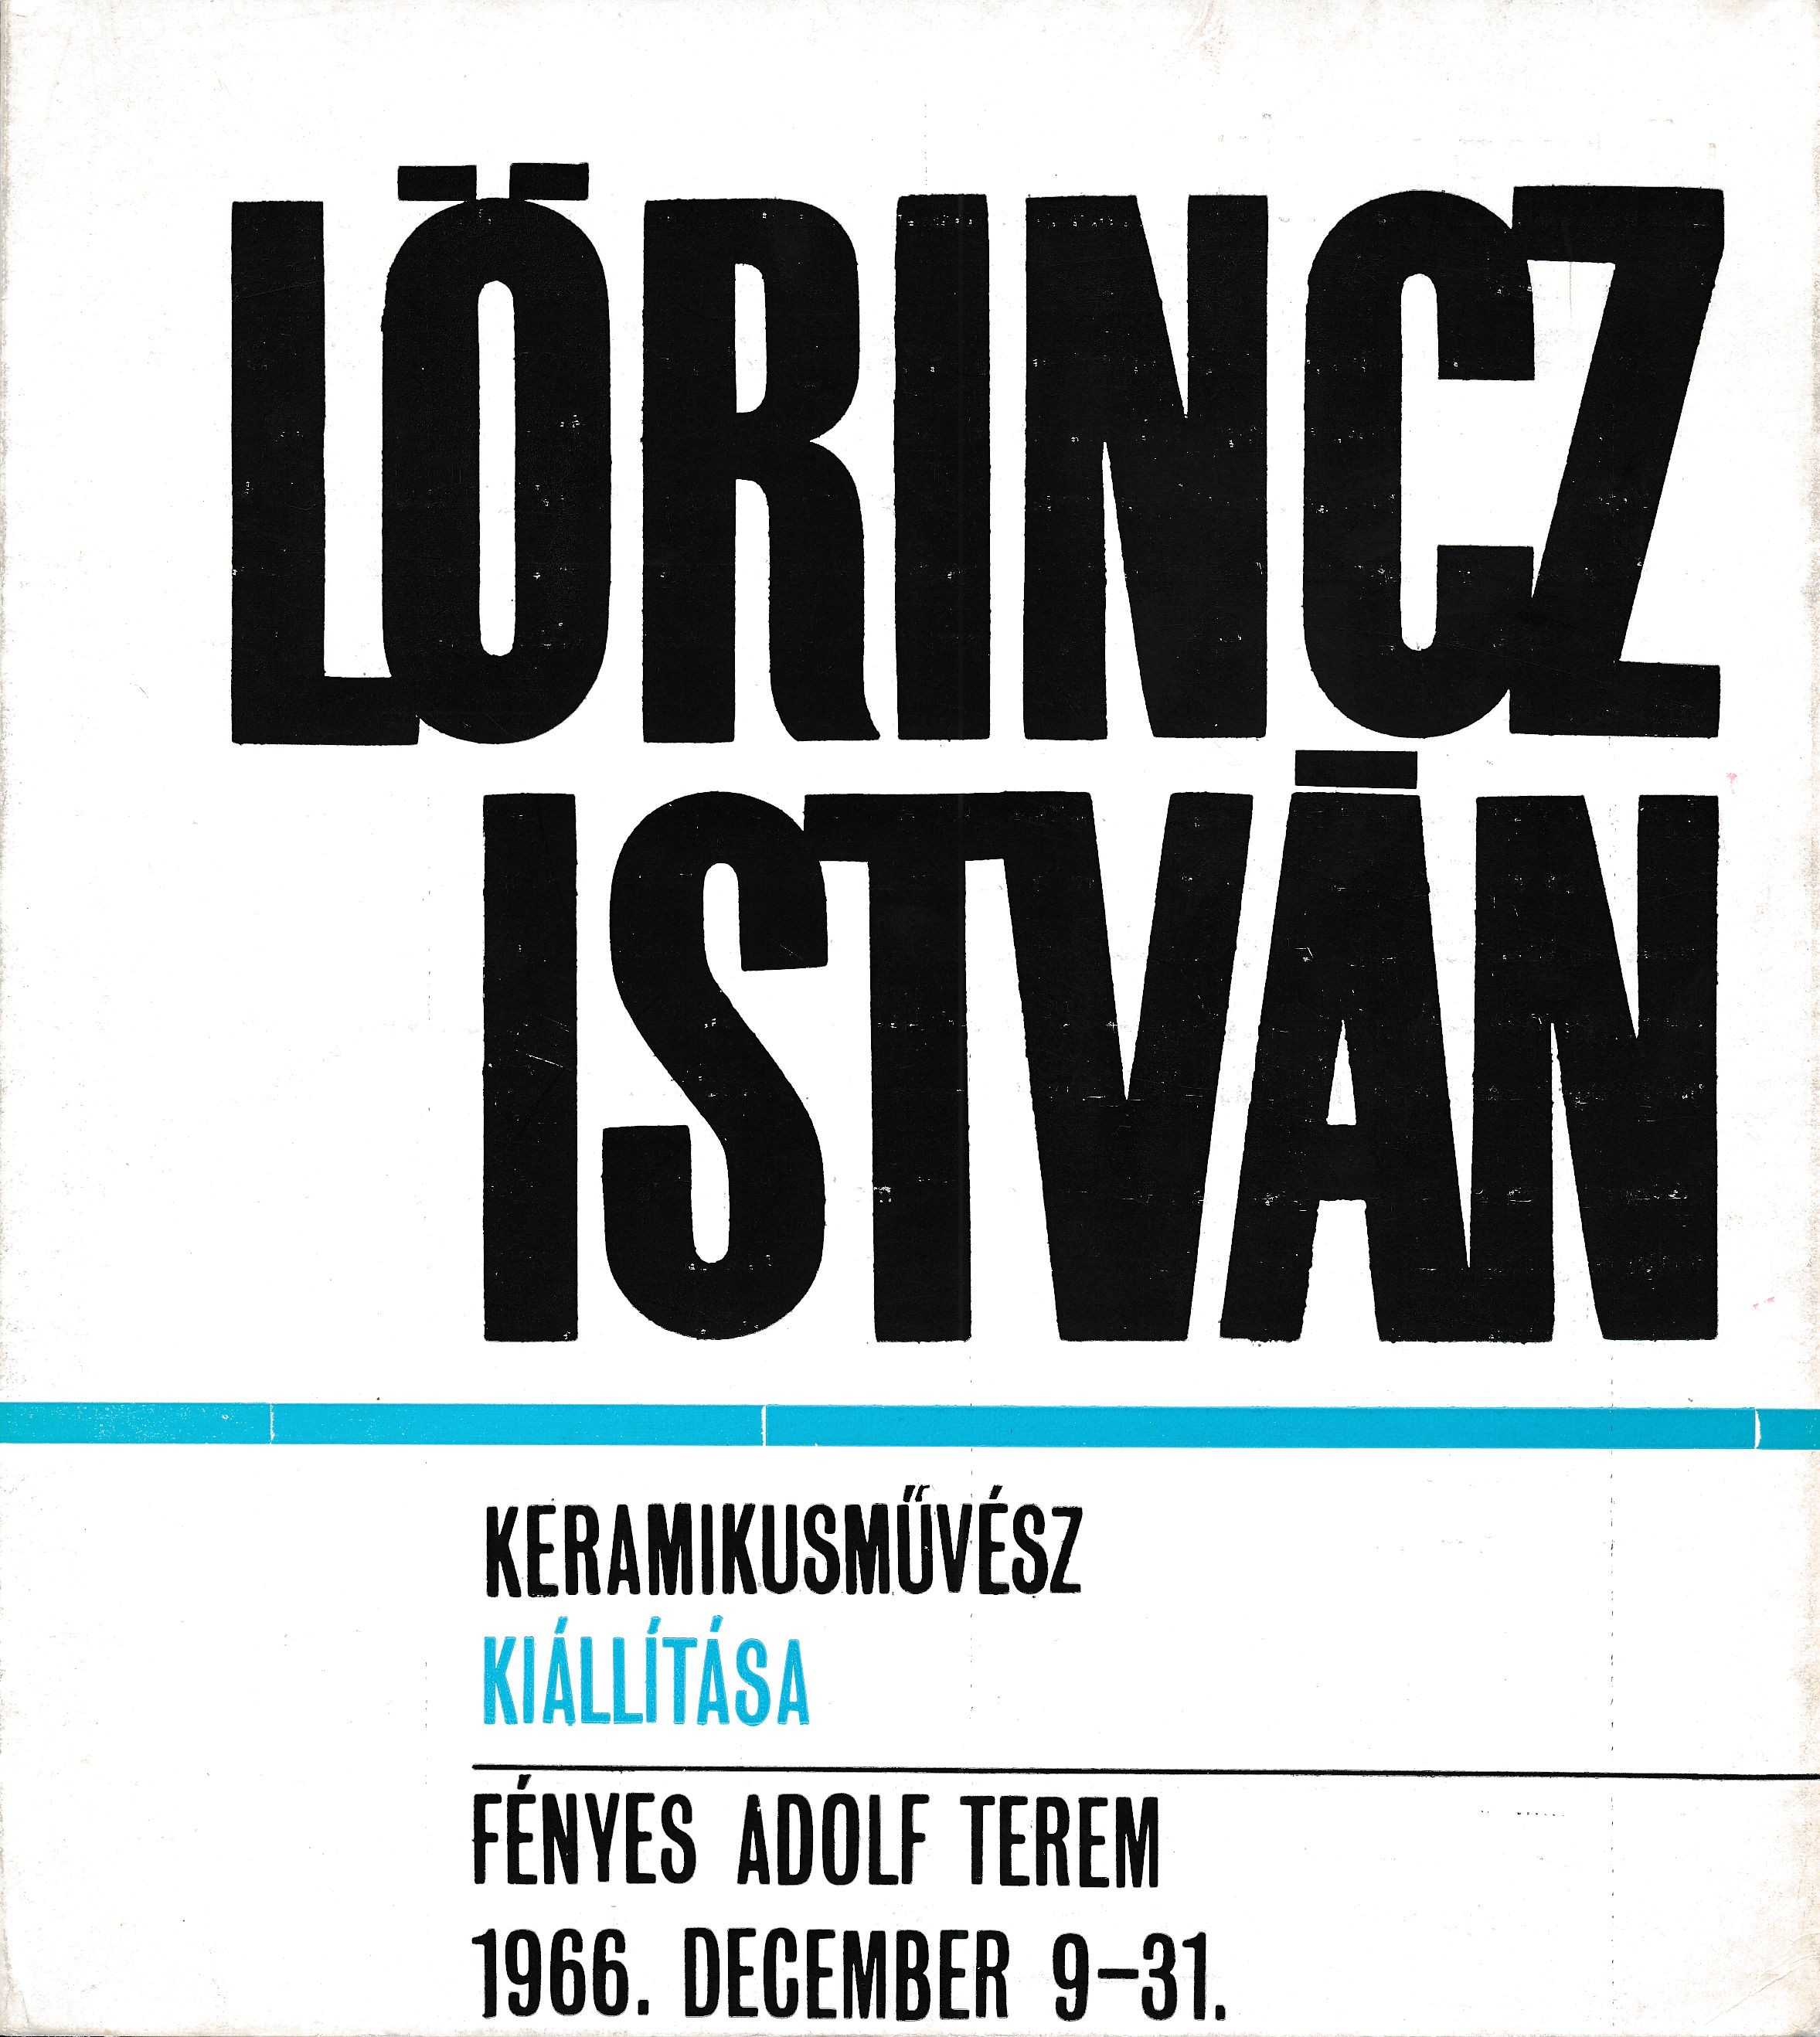 Lőrincz István keramikusművész kiállítása Fényes Adolf Terem 1966. (Design DigiTár – Iparművészeti archívum CC BY-NC-SA)